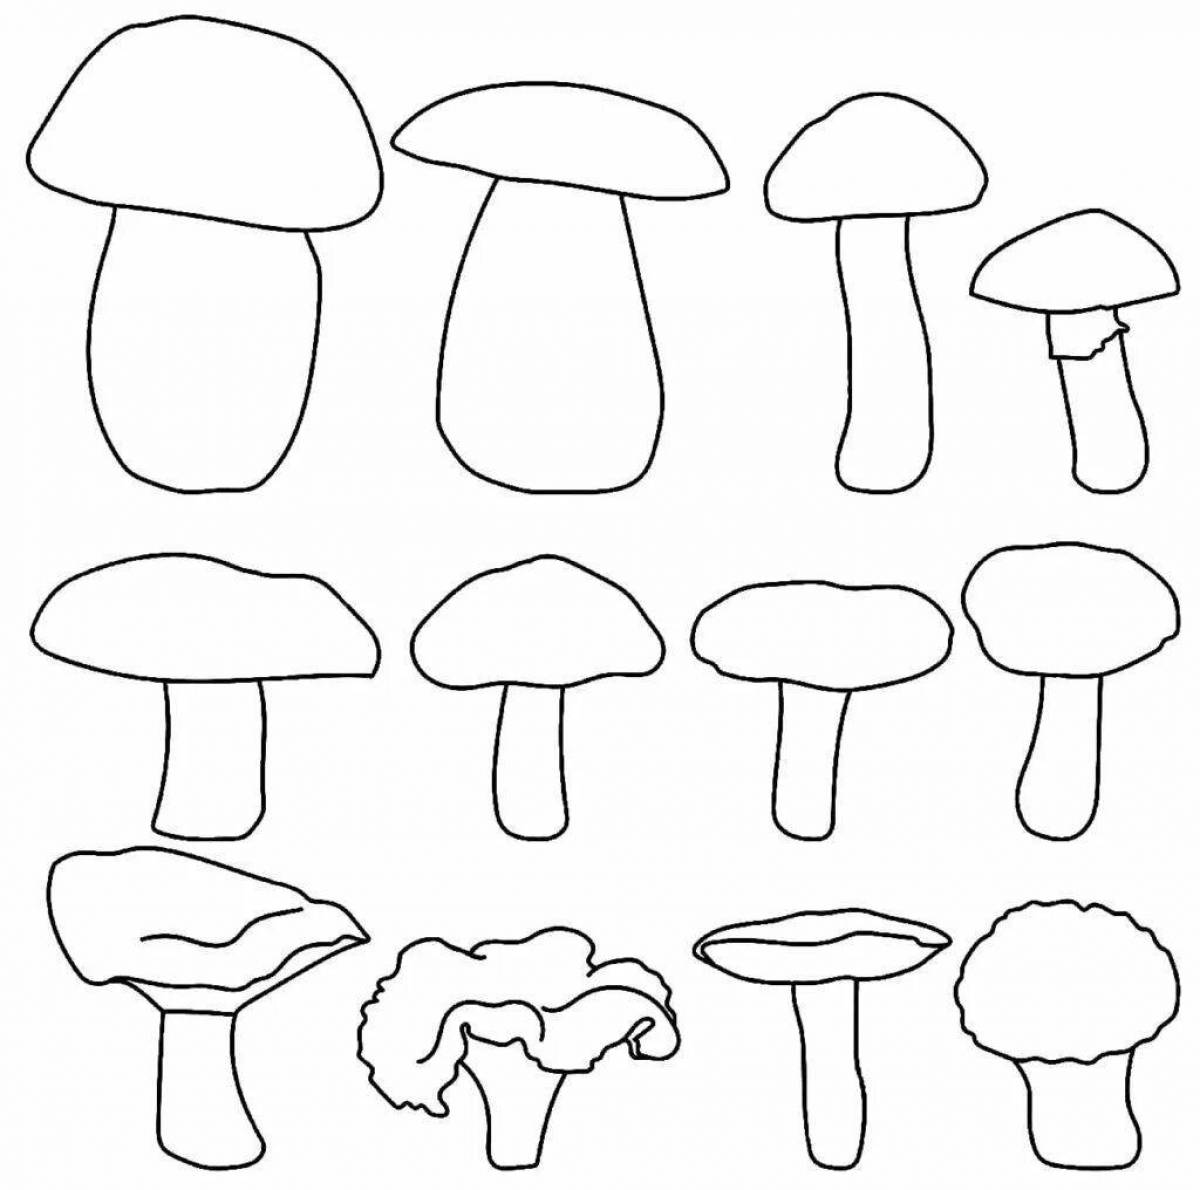 Увлекательная раскраска грибов для детей 4-5 лет